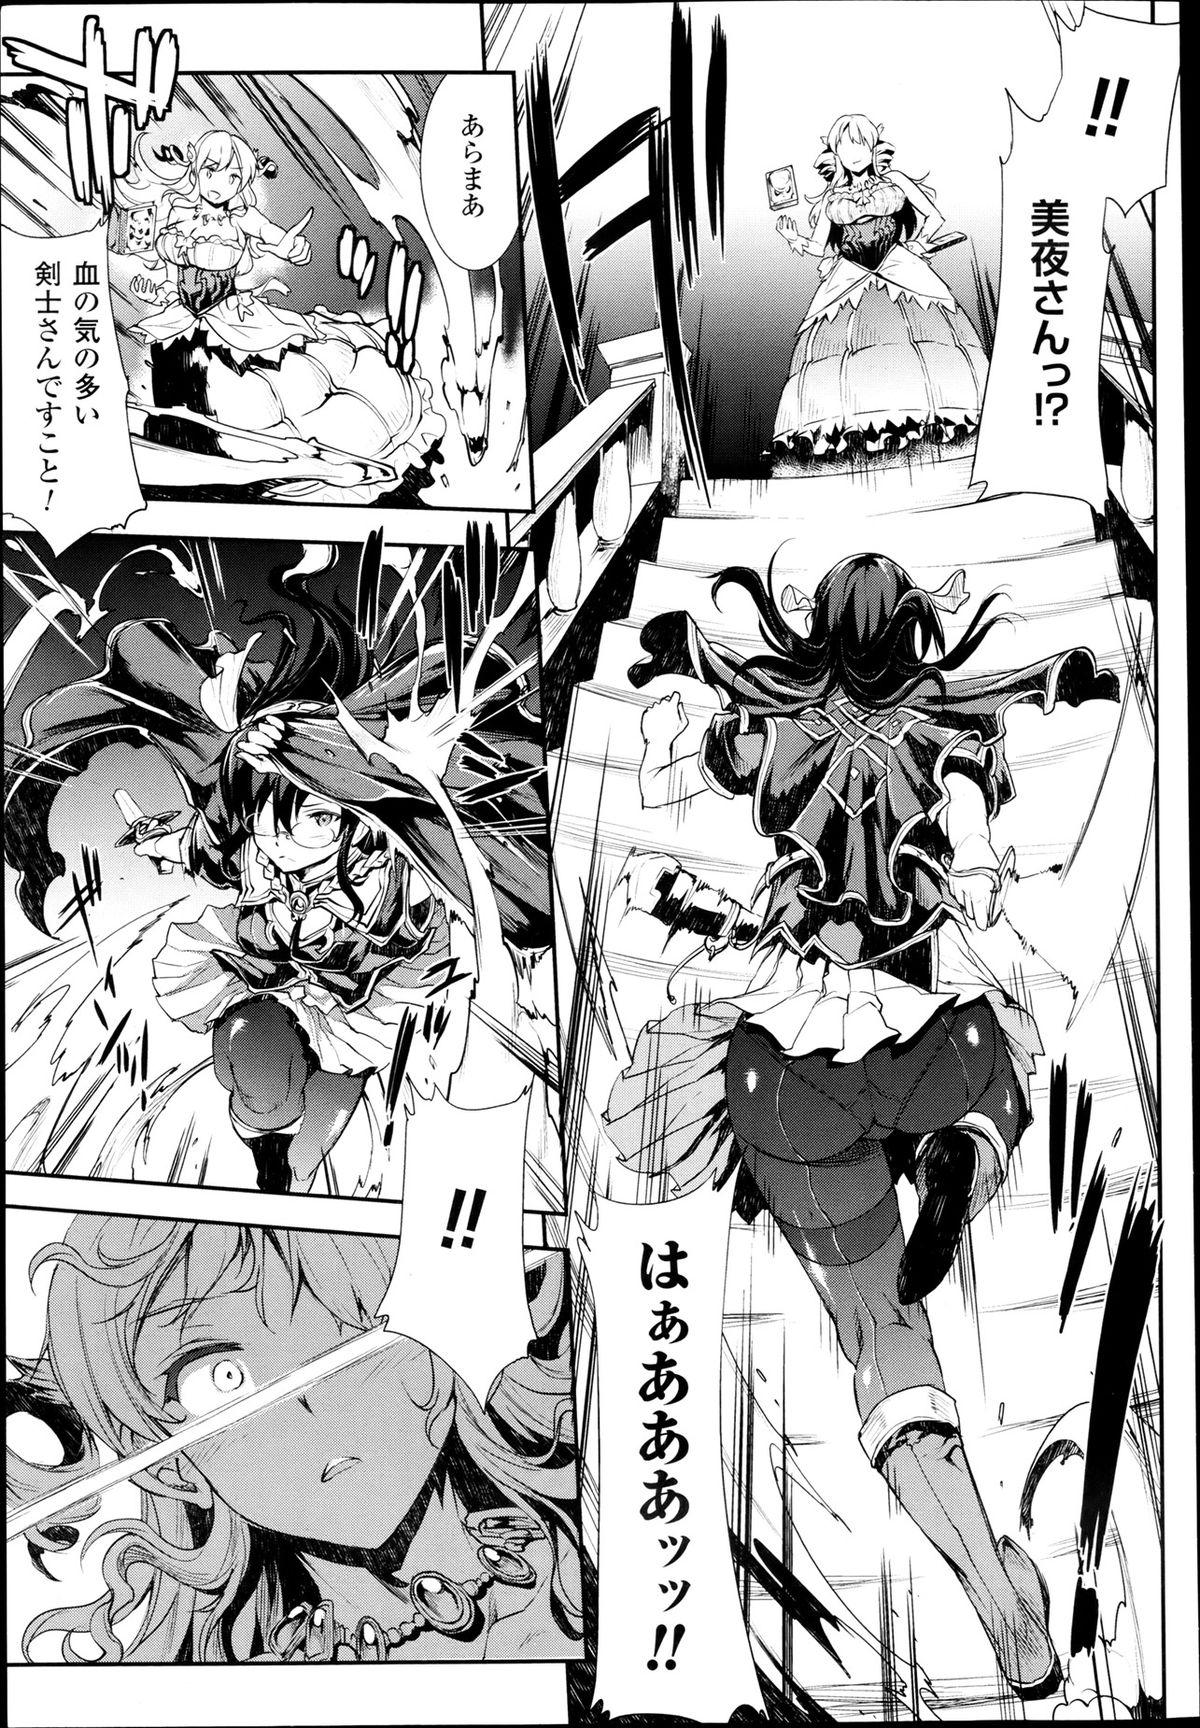 Ride [Erect Sawaru] Shinkyoku no Grimoire -PANDRA saga 2nd story- Ch 07-9.5 Teensnow - Page 7